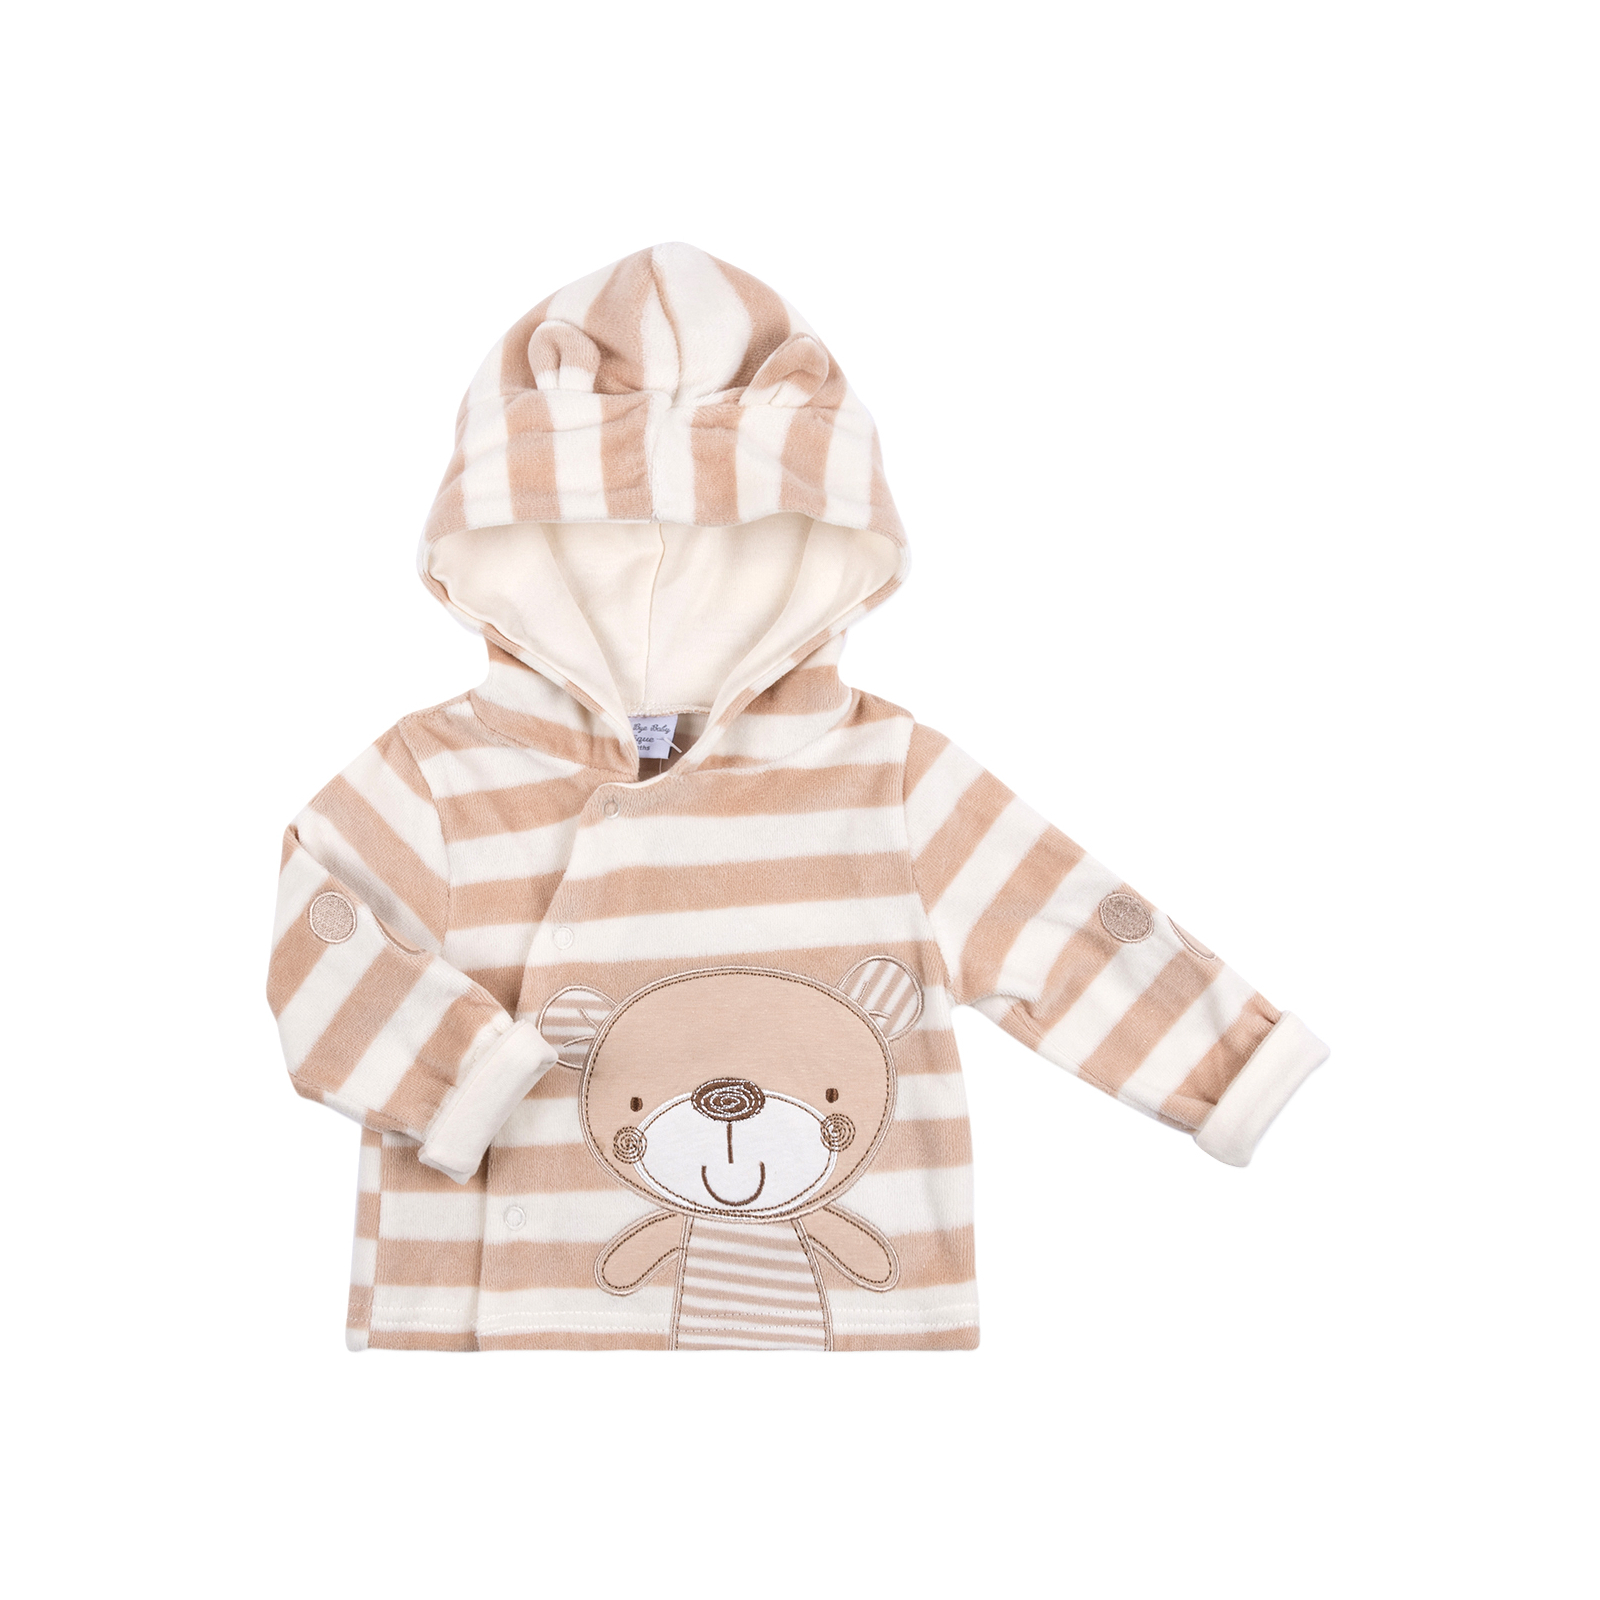 Набор детской одежды Luvena Fortuna велюровый с медвежонком (G8193.0-3) изображение 2